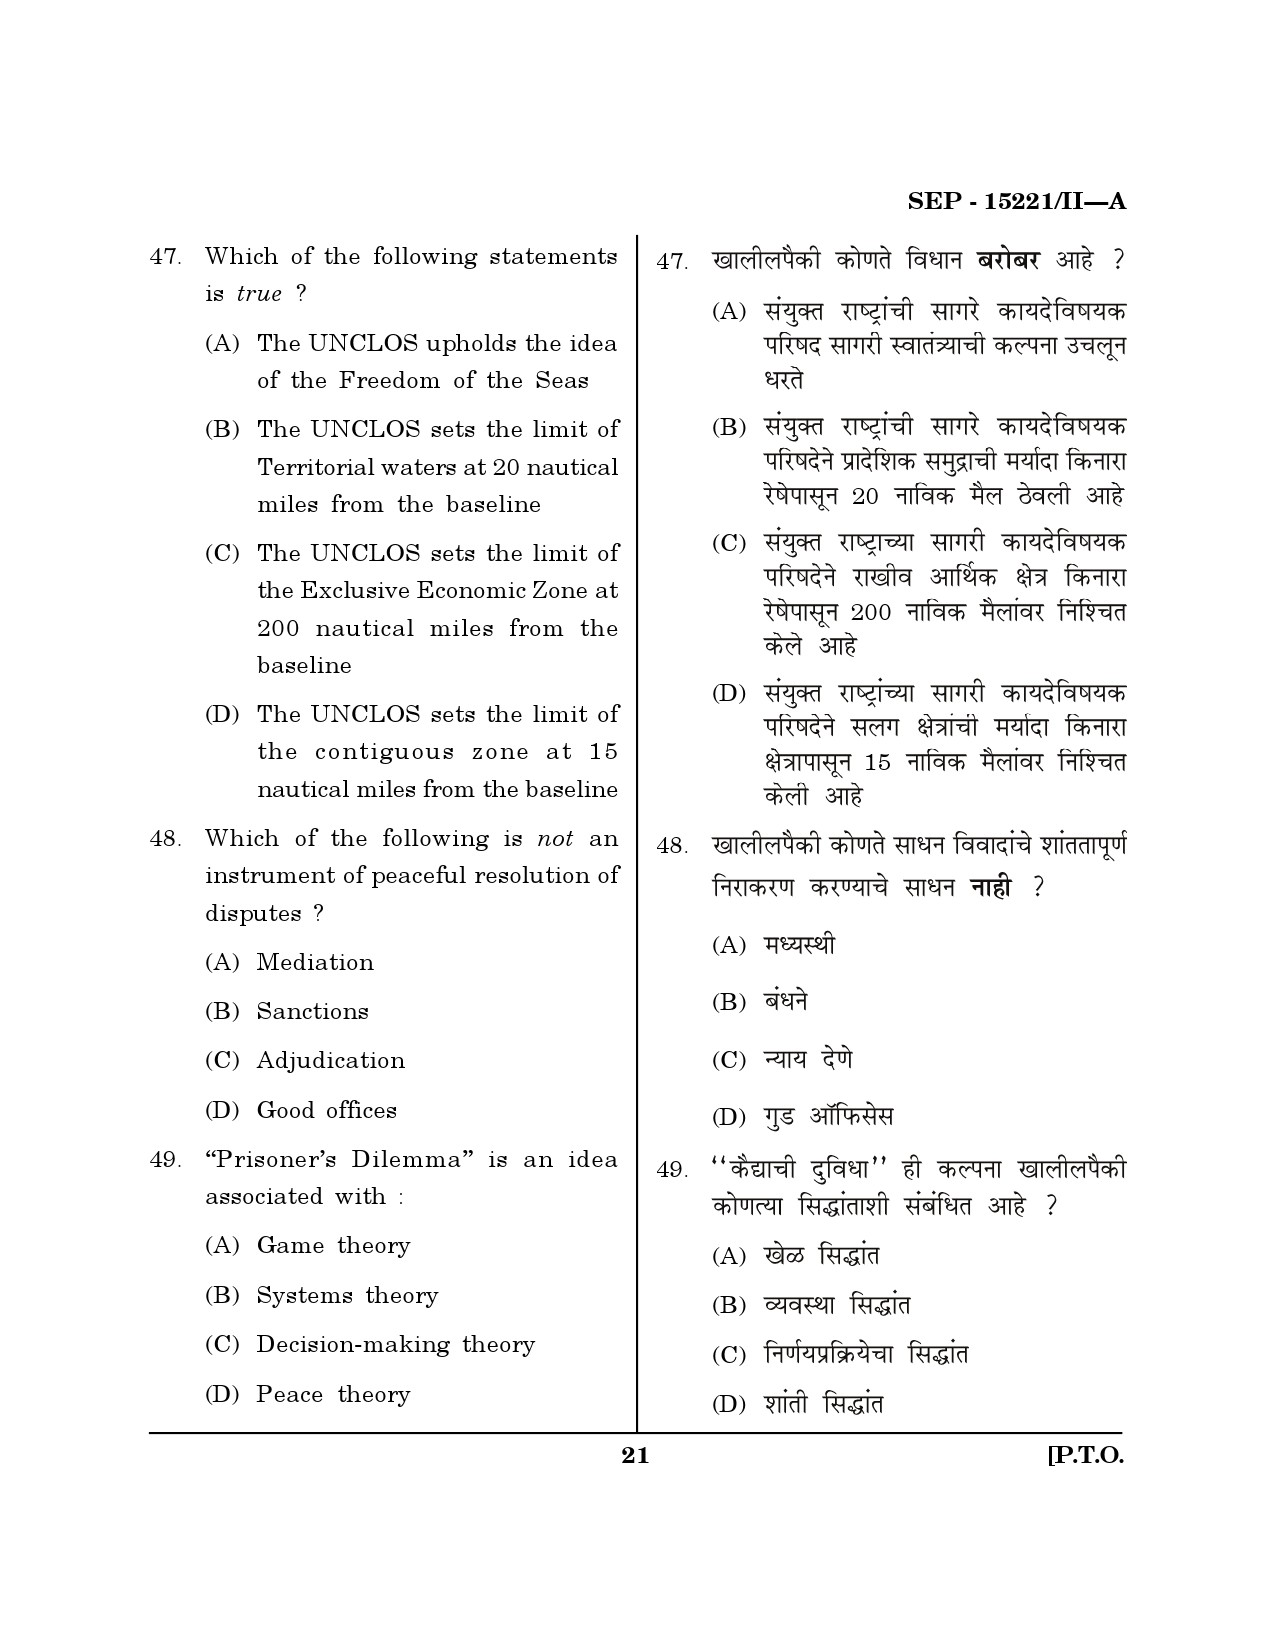 Maharashtra SET Political Science Exam Question Paper September 2021 20